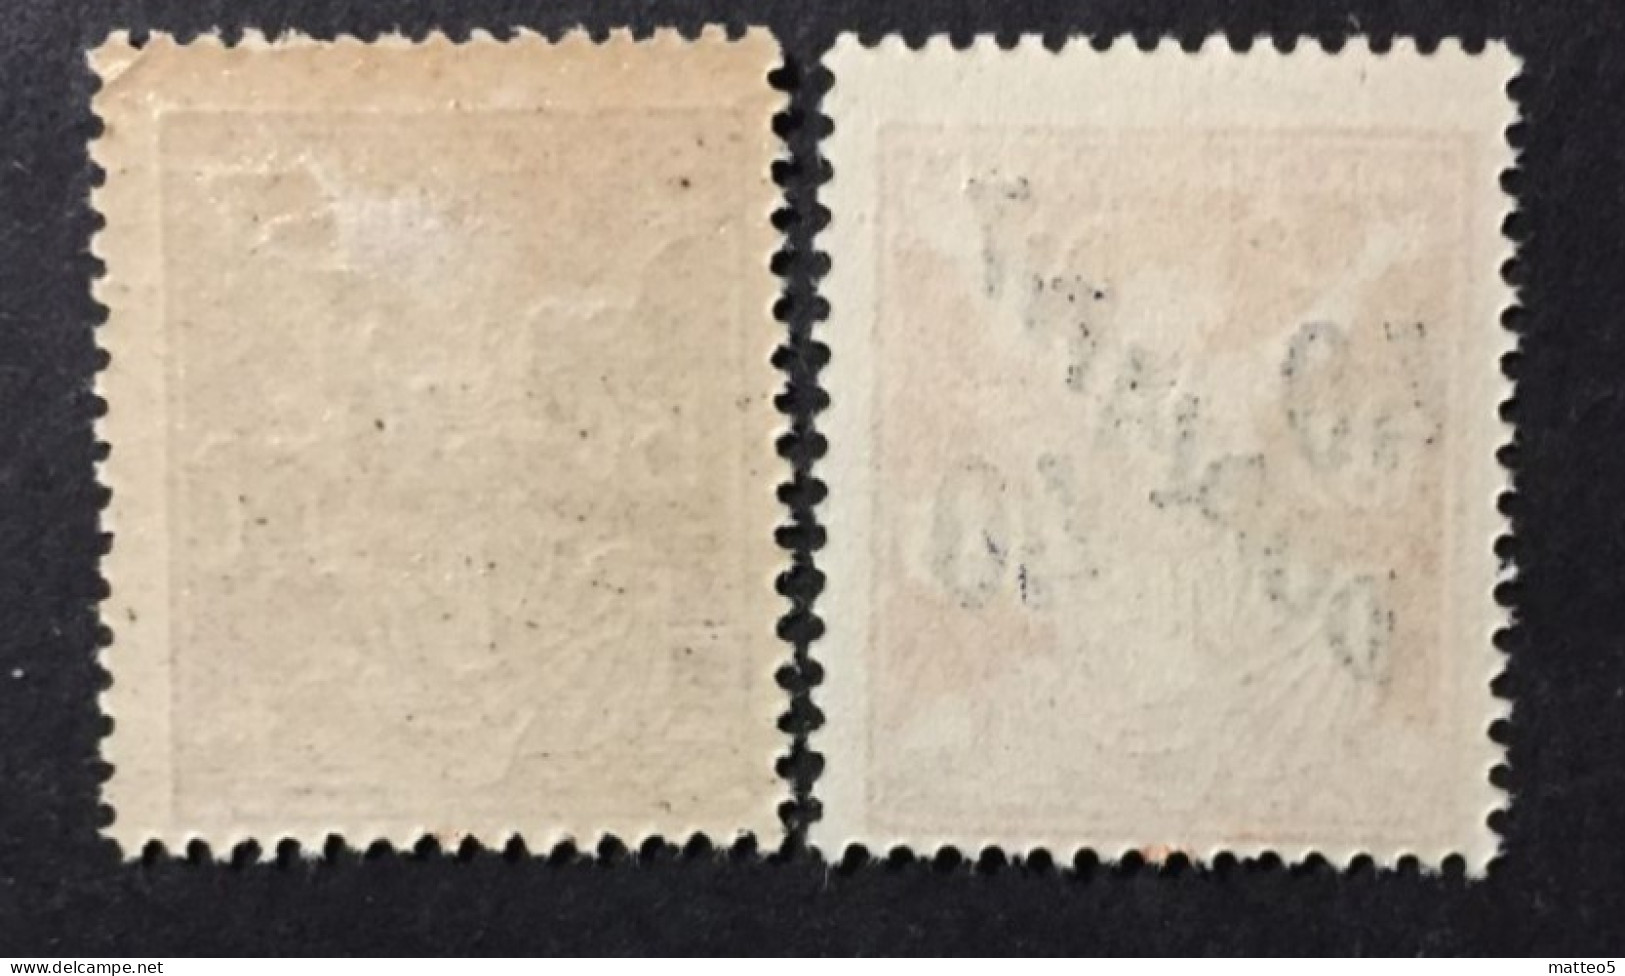 1920 /27  Czechoslovakia - Postage Due Stamps Overprint DOPLATIT - Unused - Unused Stamps